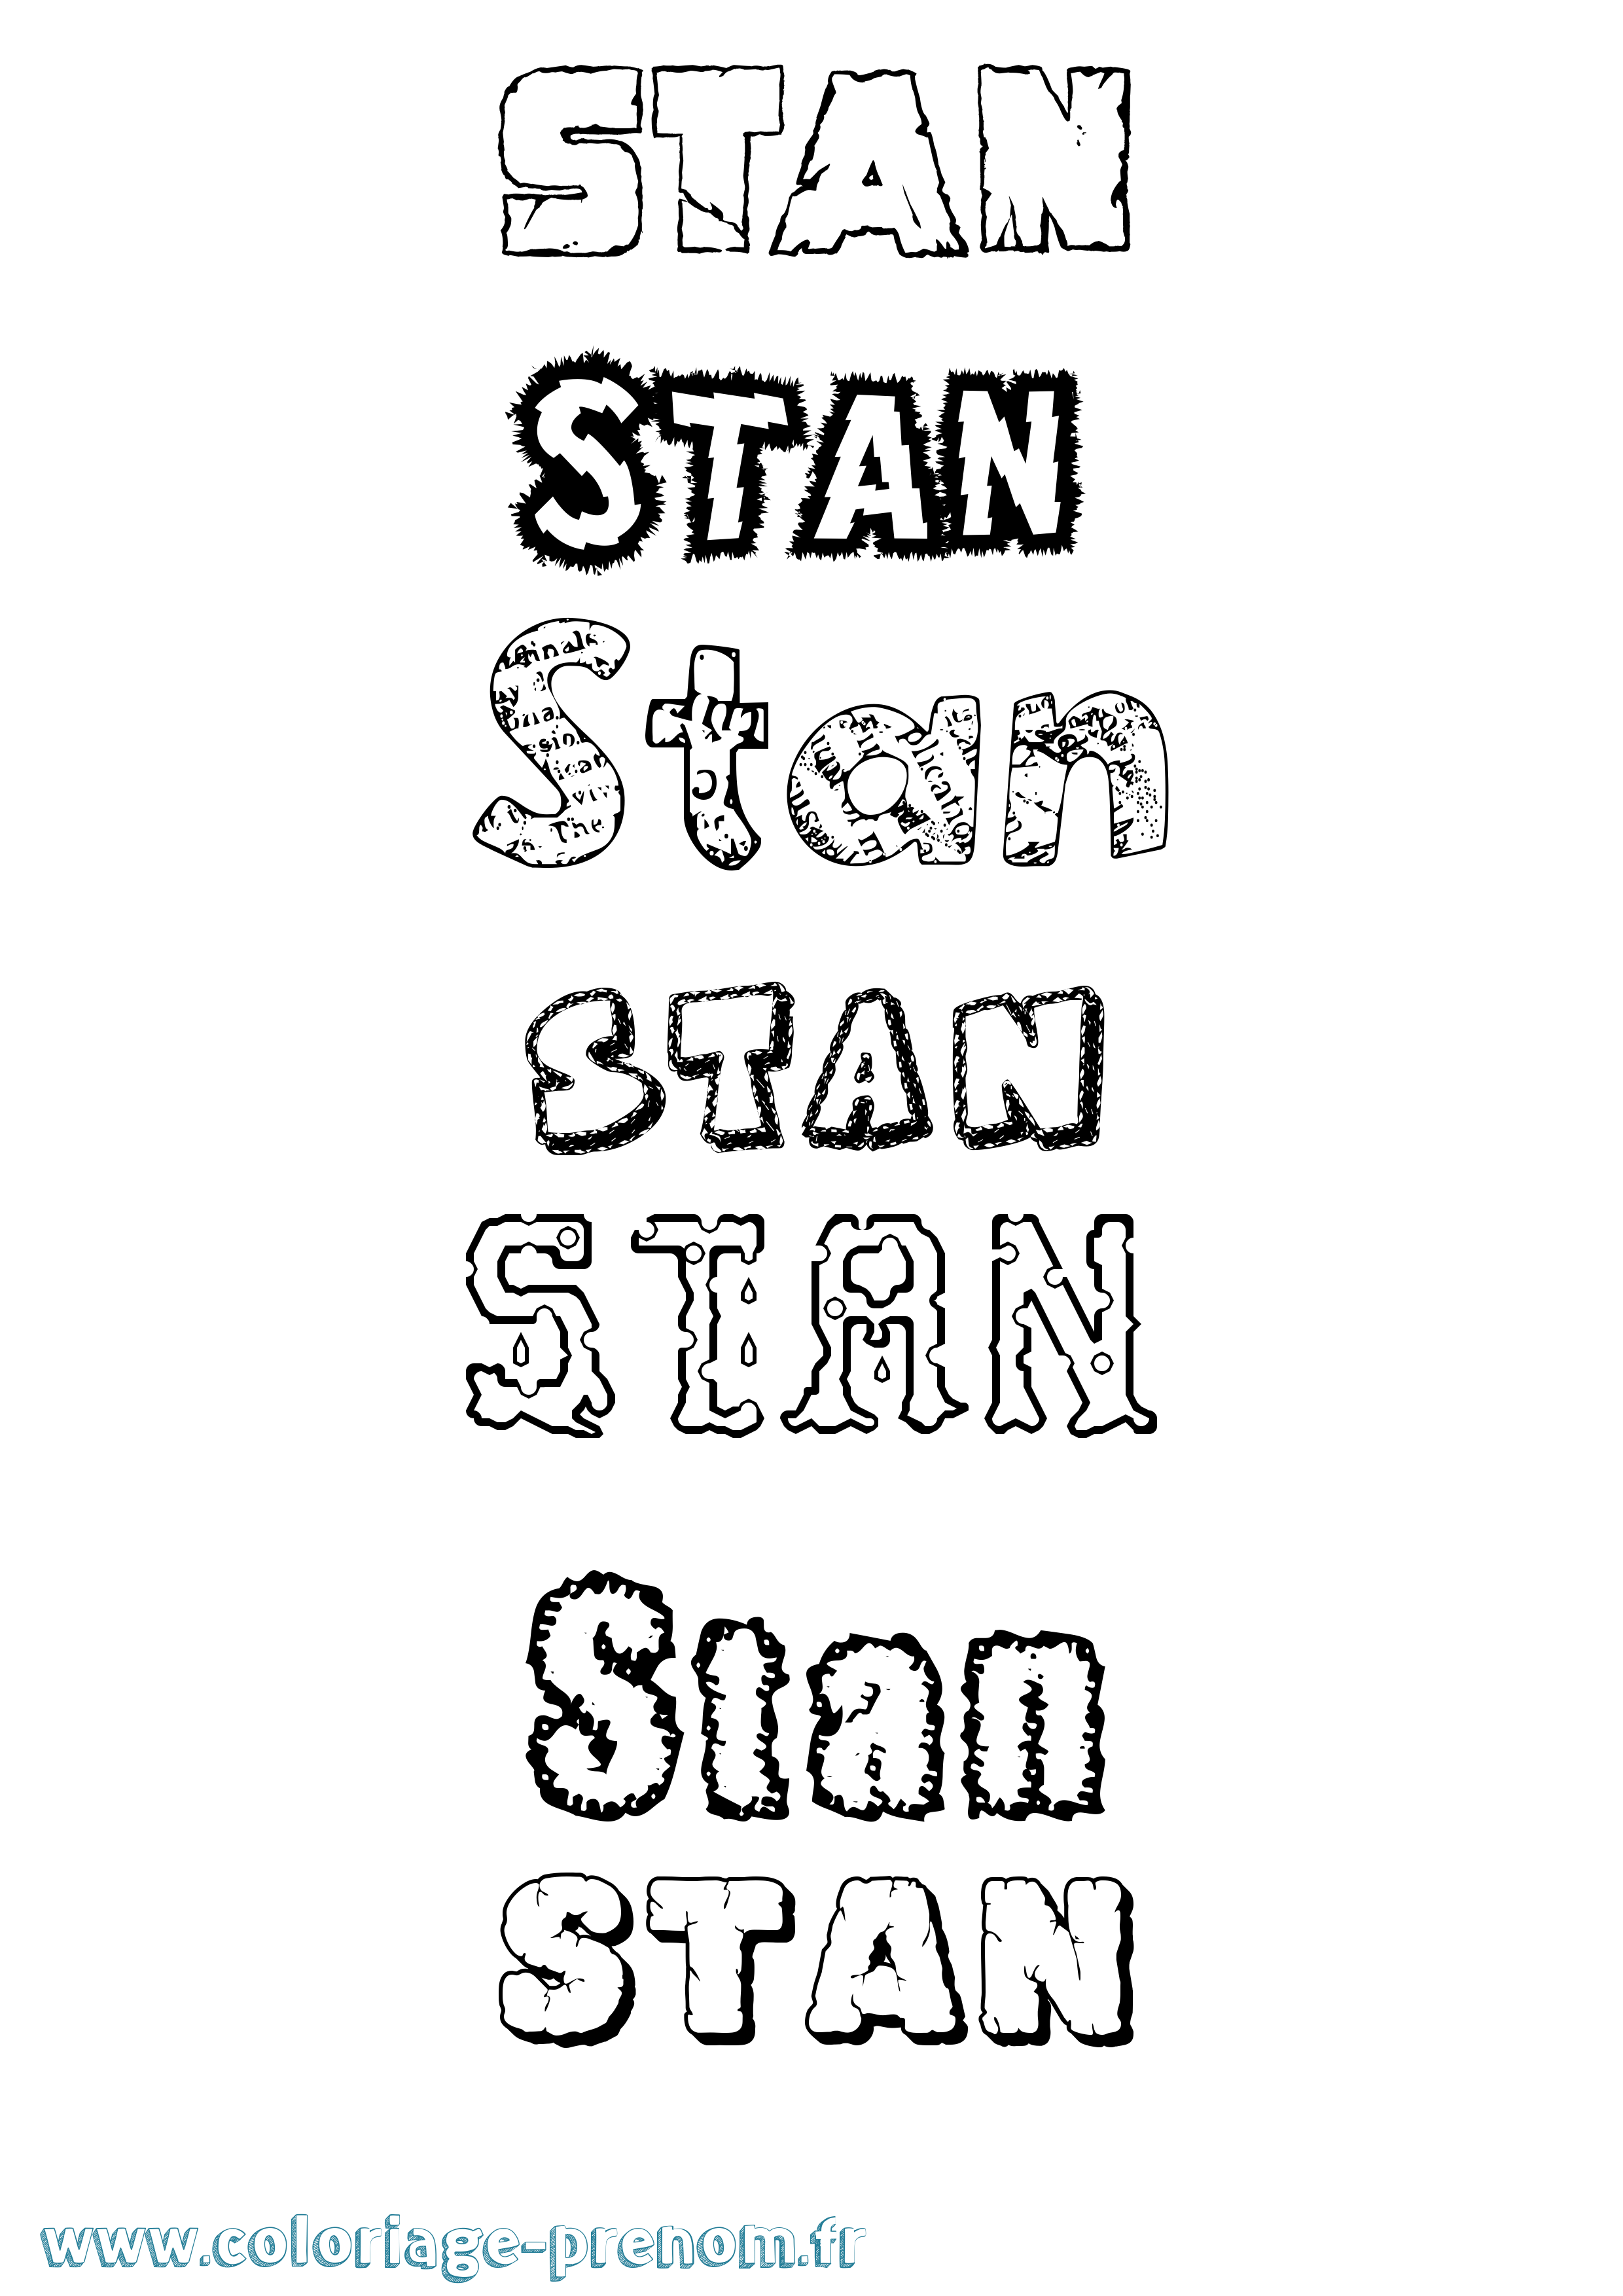 Coloriage prénom Stan Destructuré